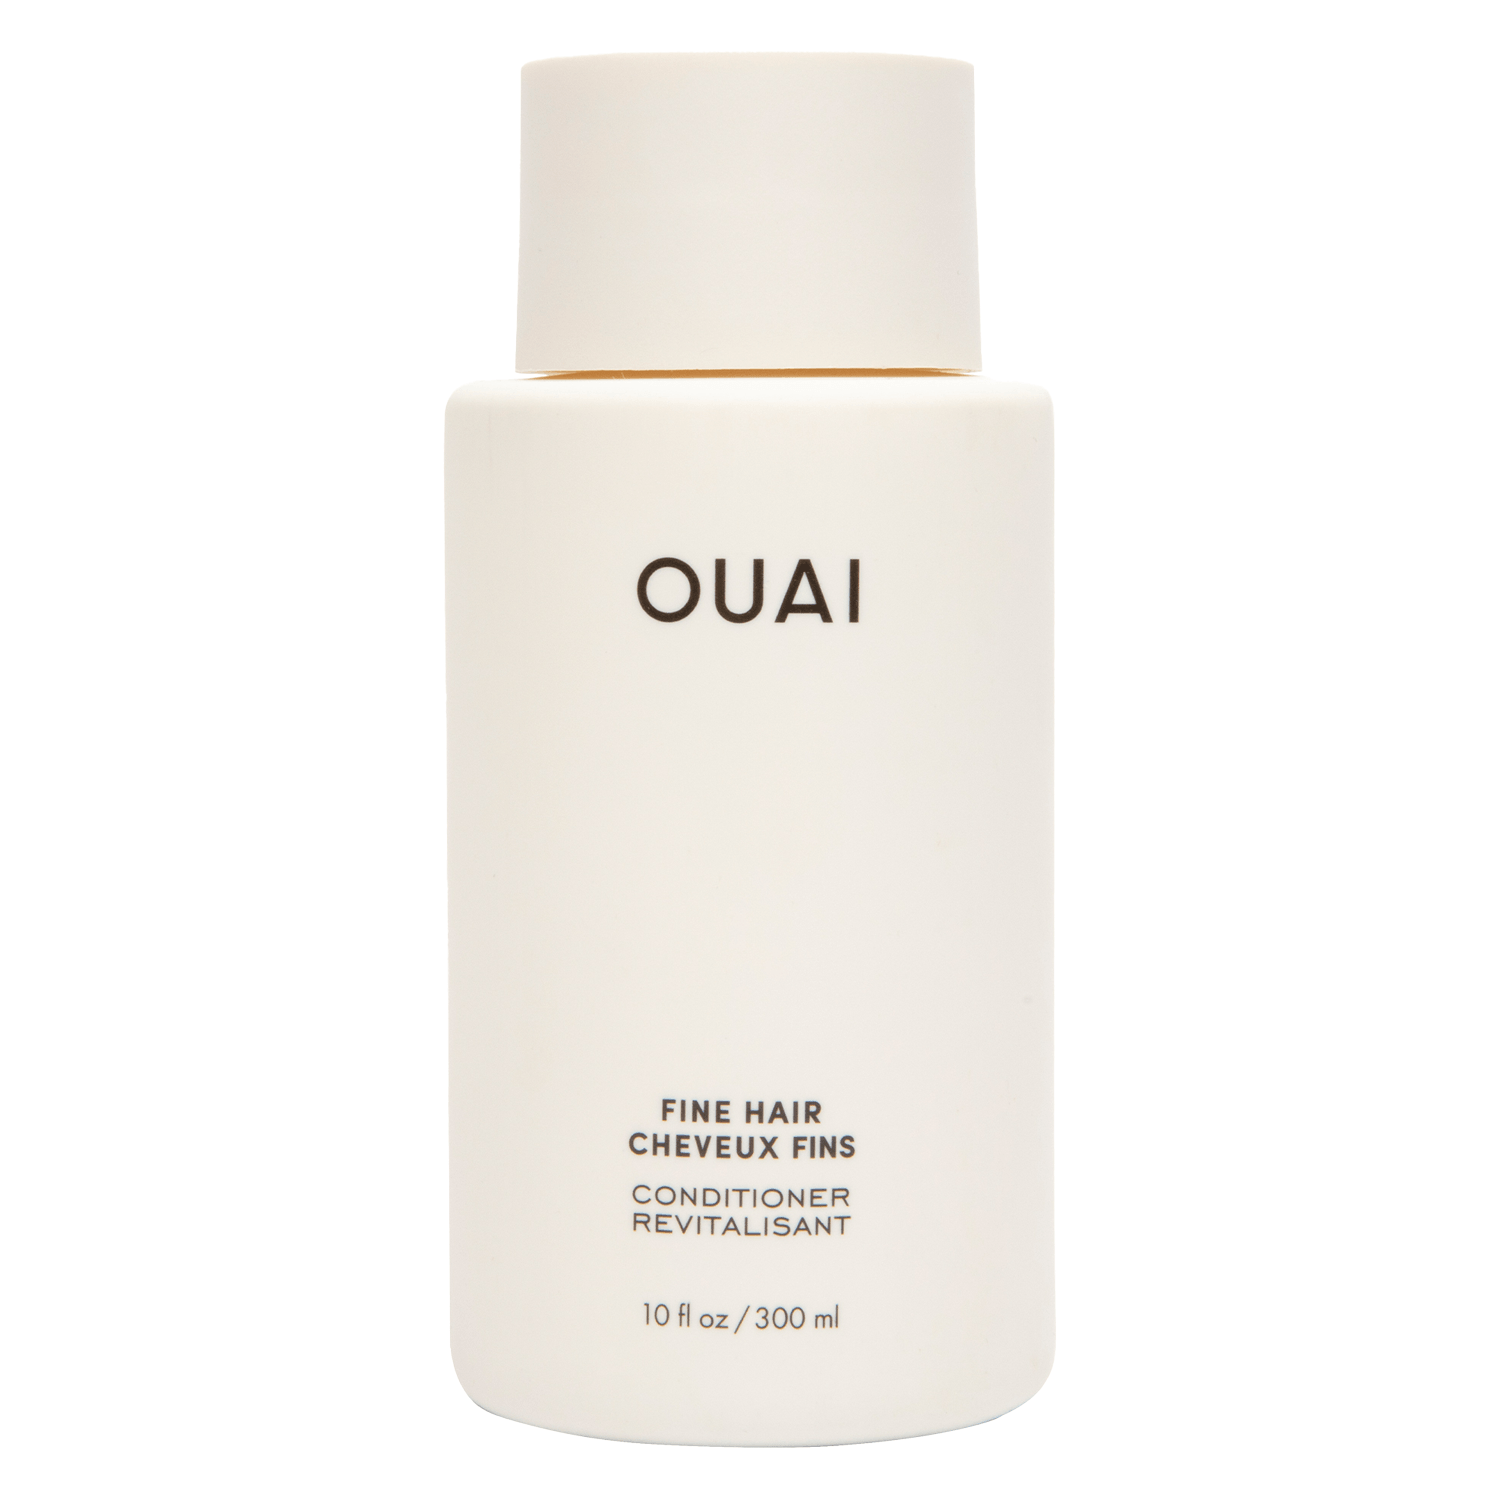 Produktbild von OUAI - Fine Hair Conditioner